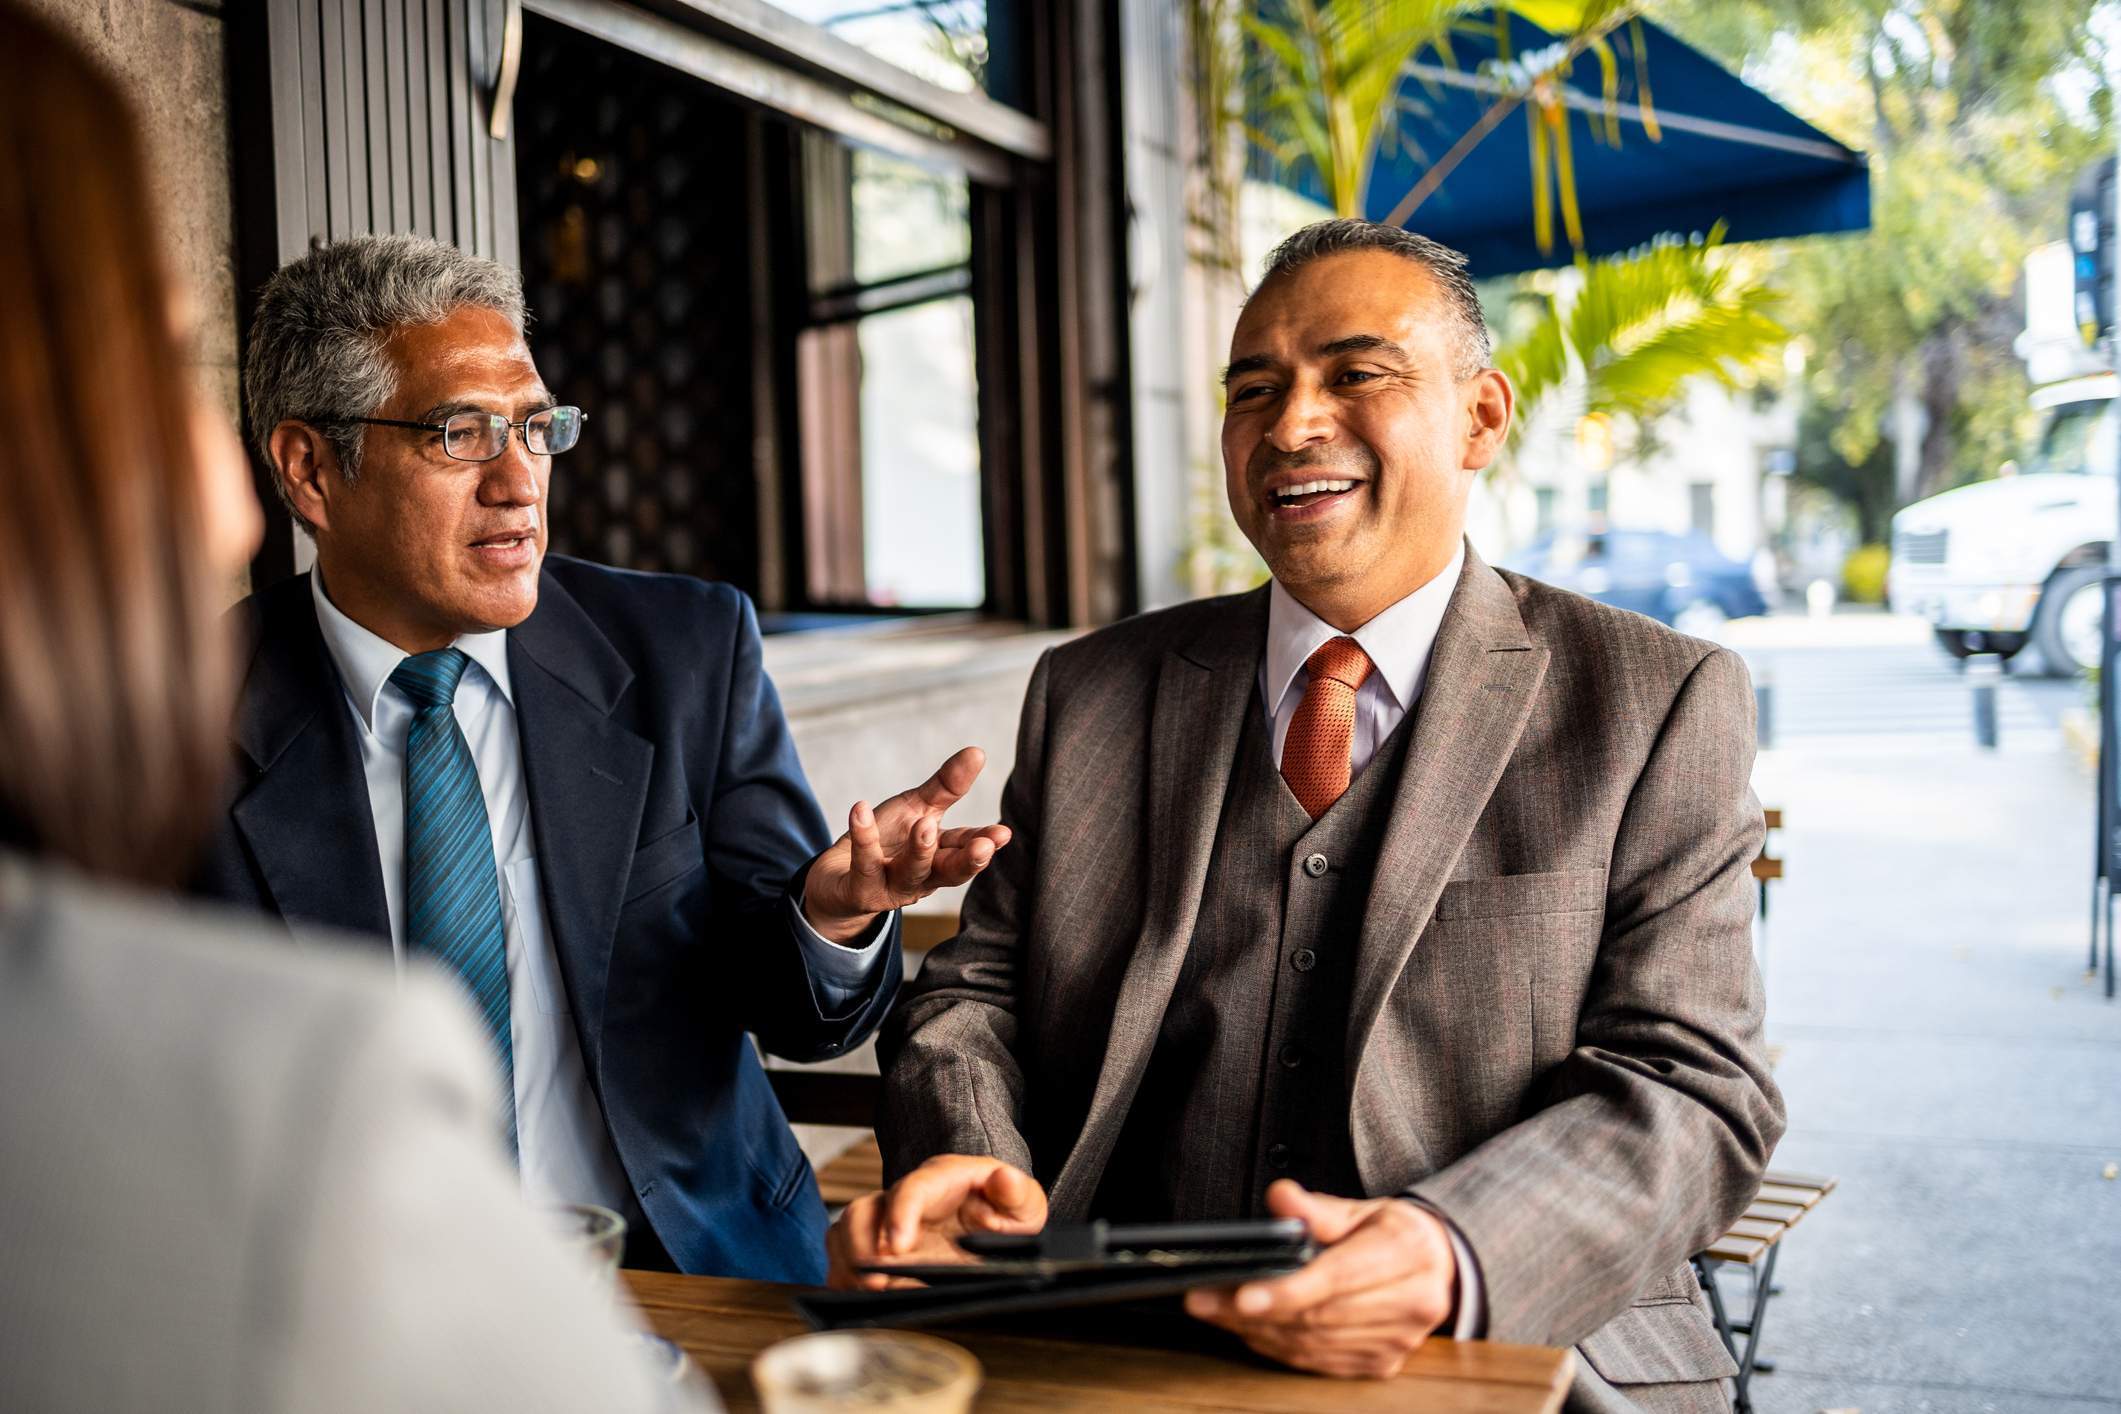 En esta foto, dos hombres de negocios están sentados fuera de un restaurante y hablan con una tercera persona. Llevan ropa de oficina y uno de ellos sostiene una tableta en la mano.